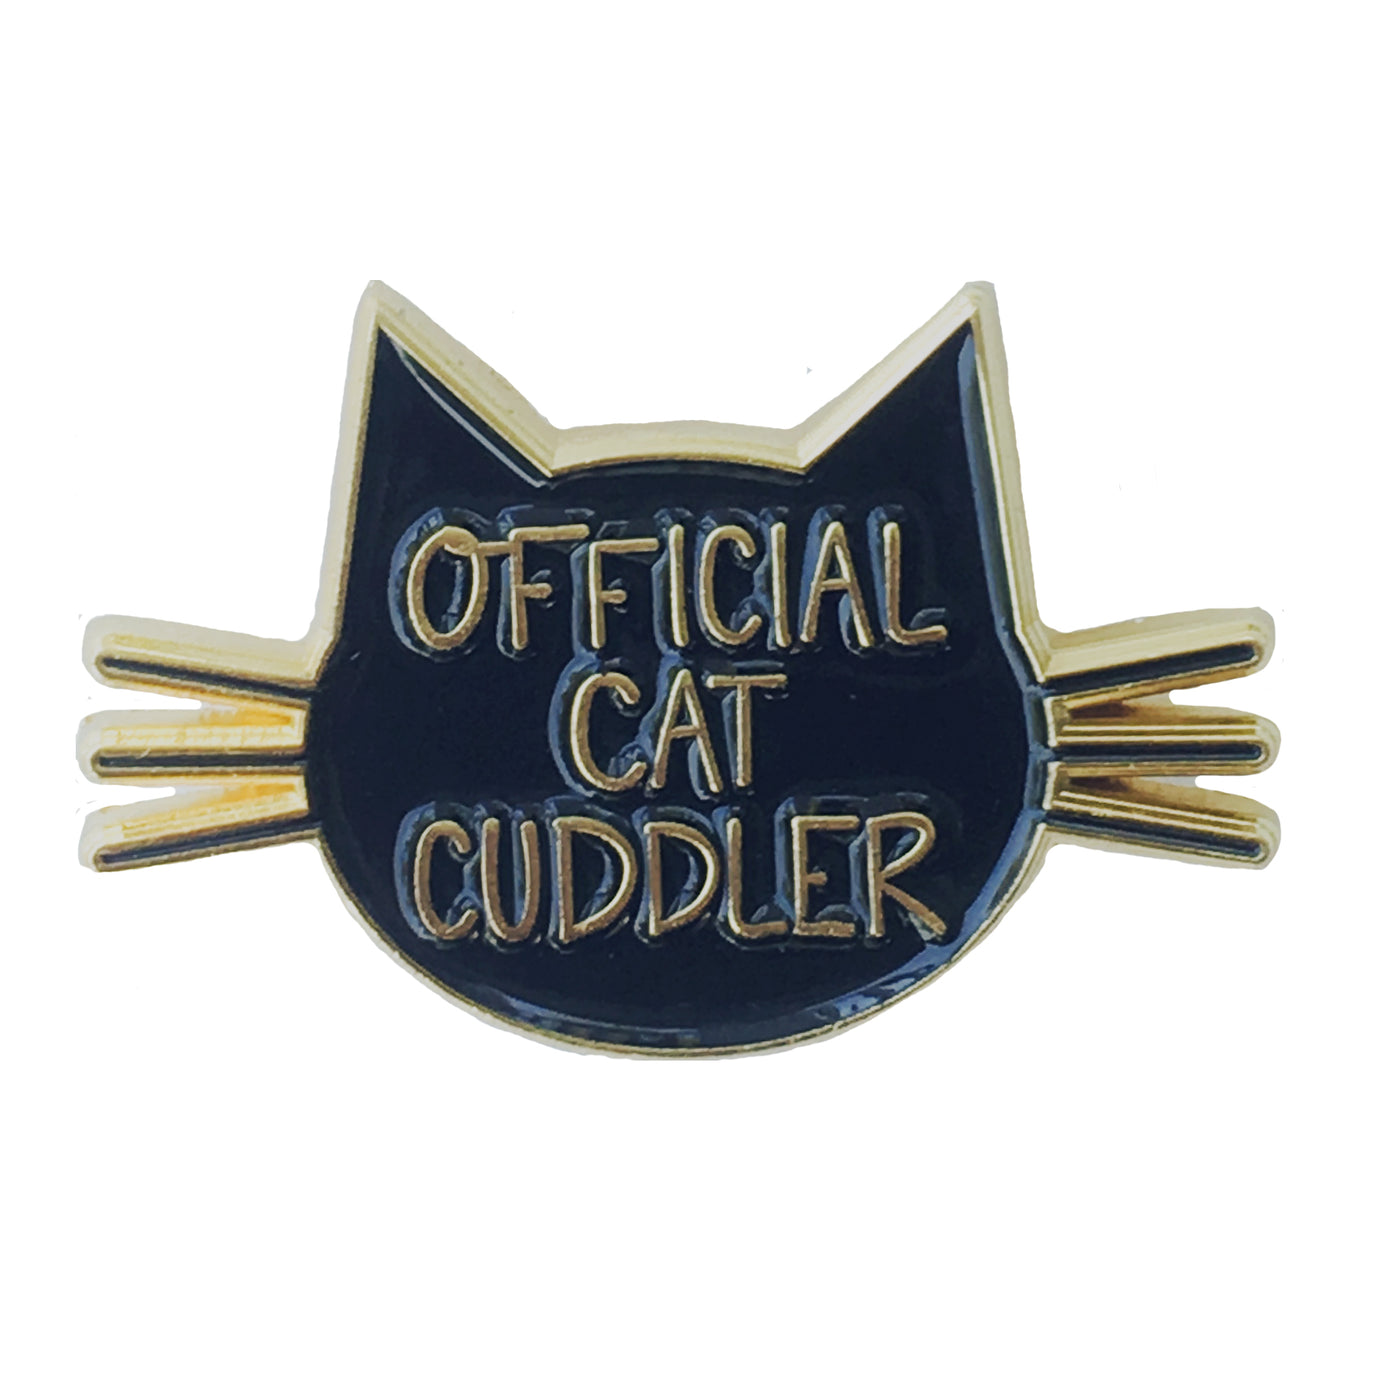 Official Cat Cuddler Pin